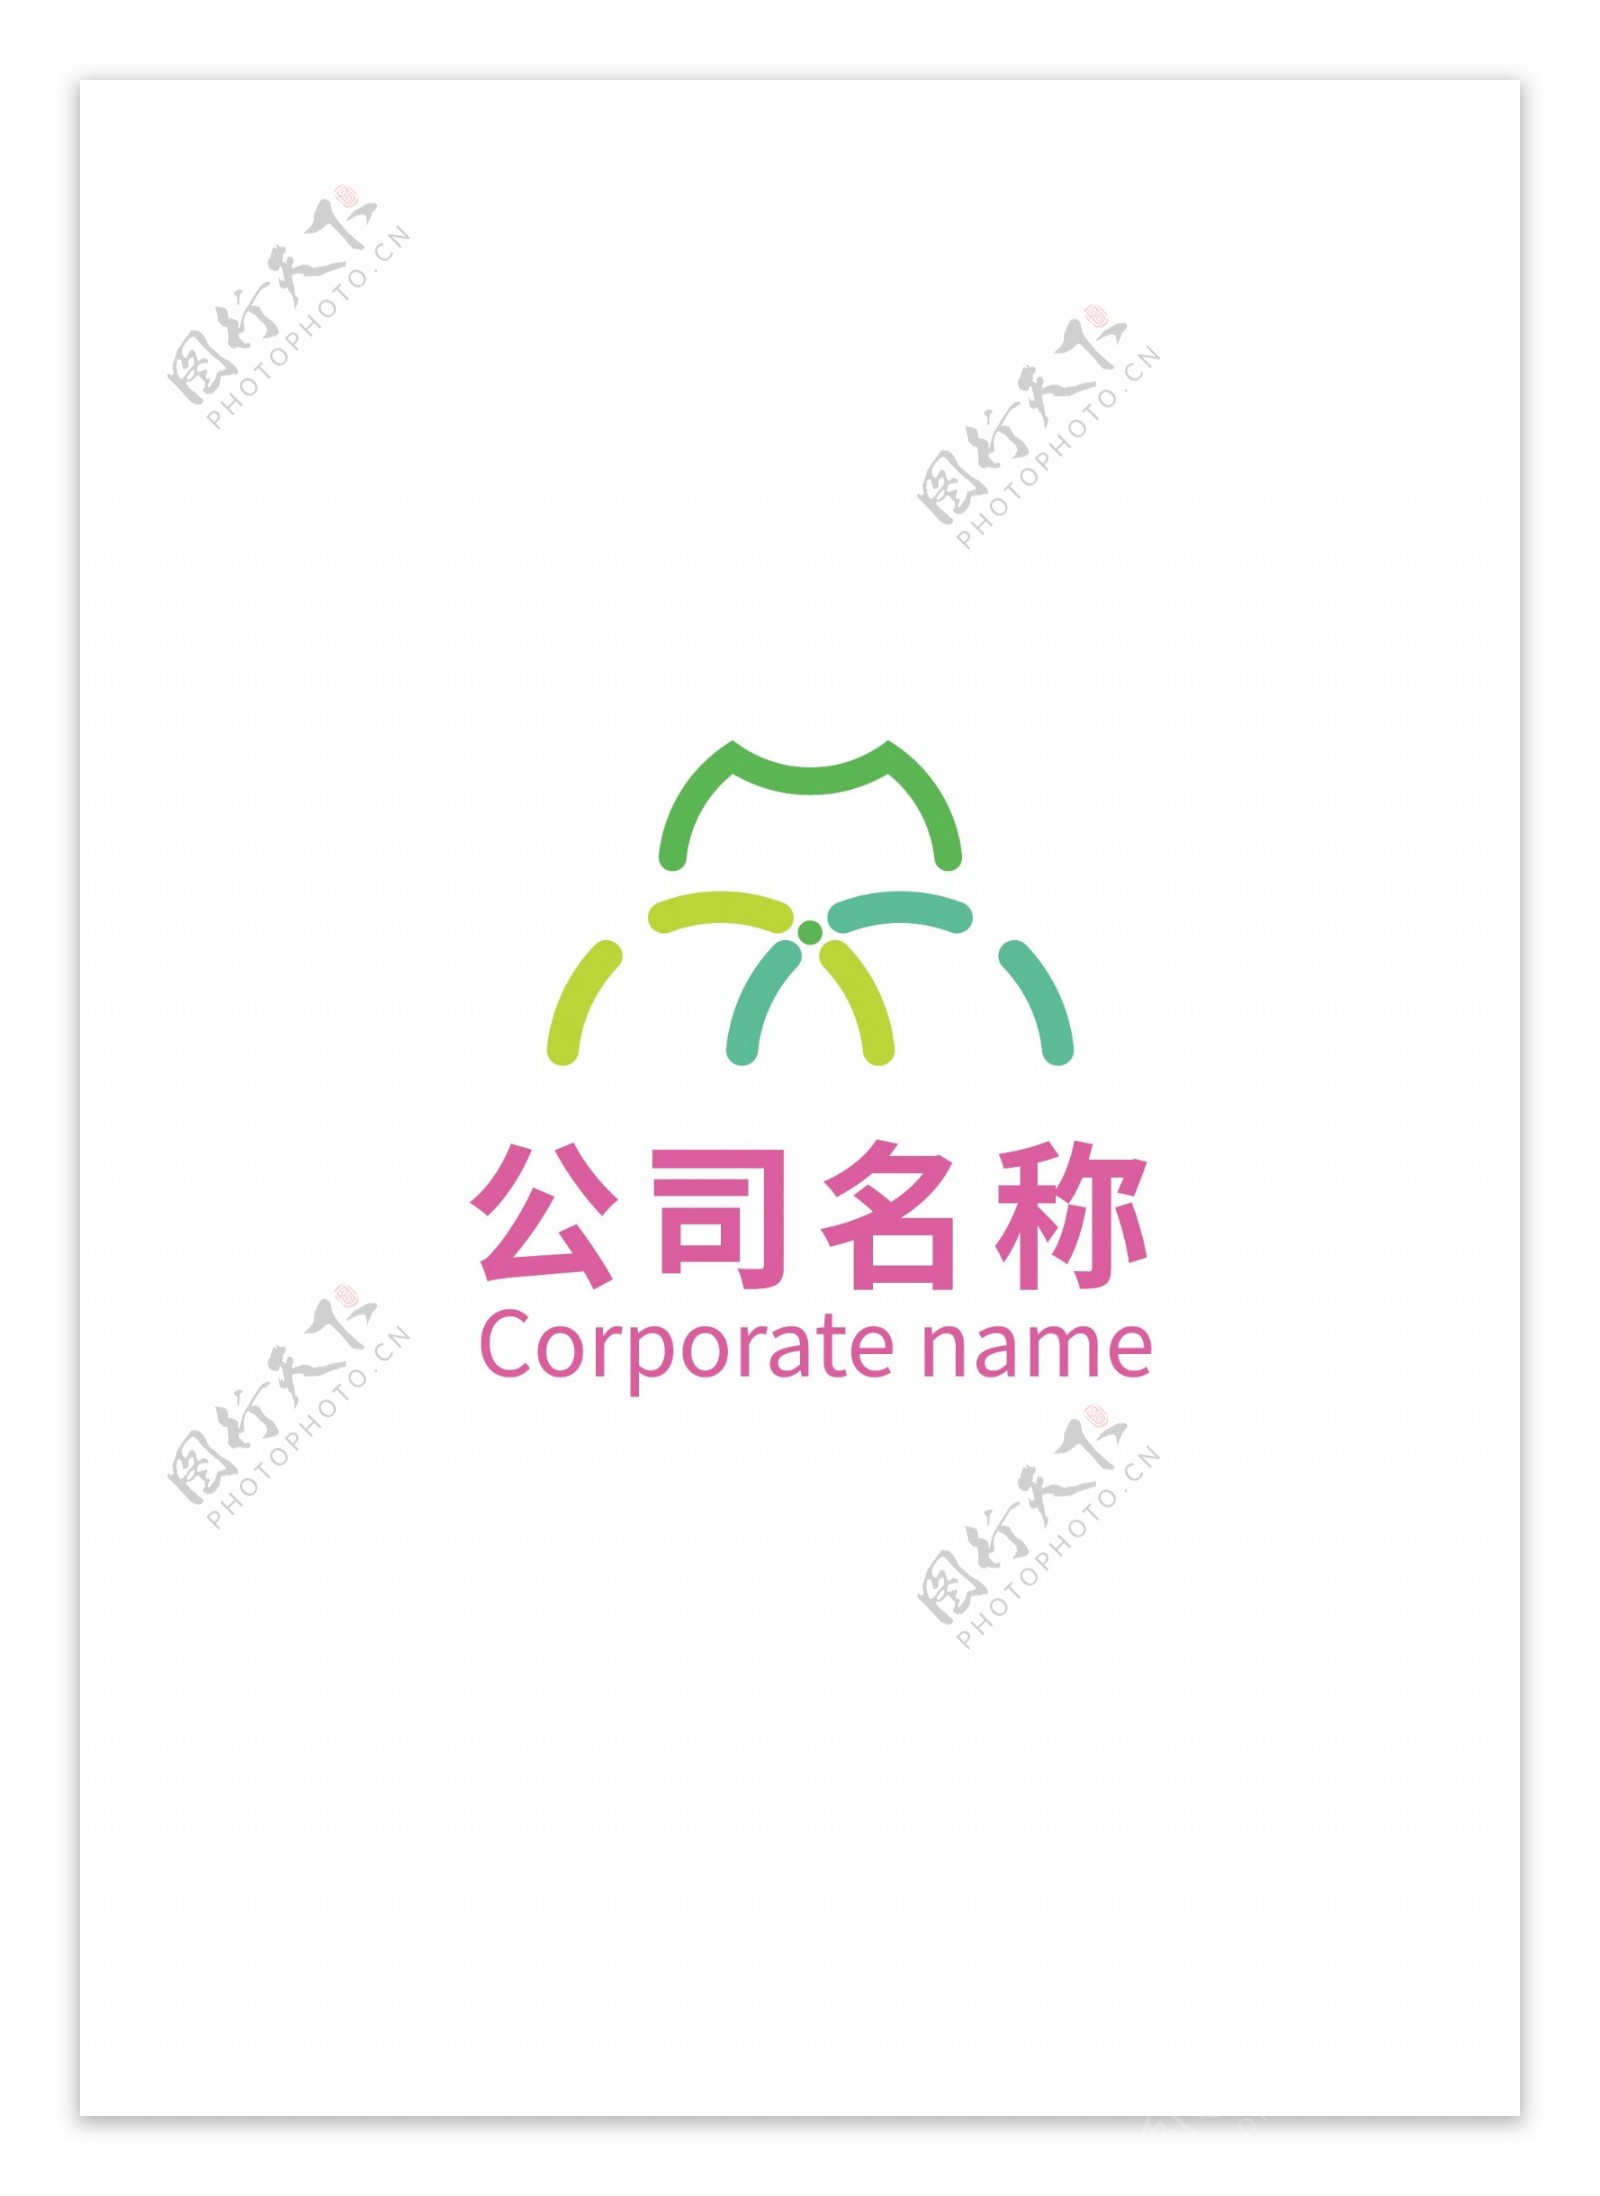 商业logo商标设计